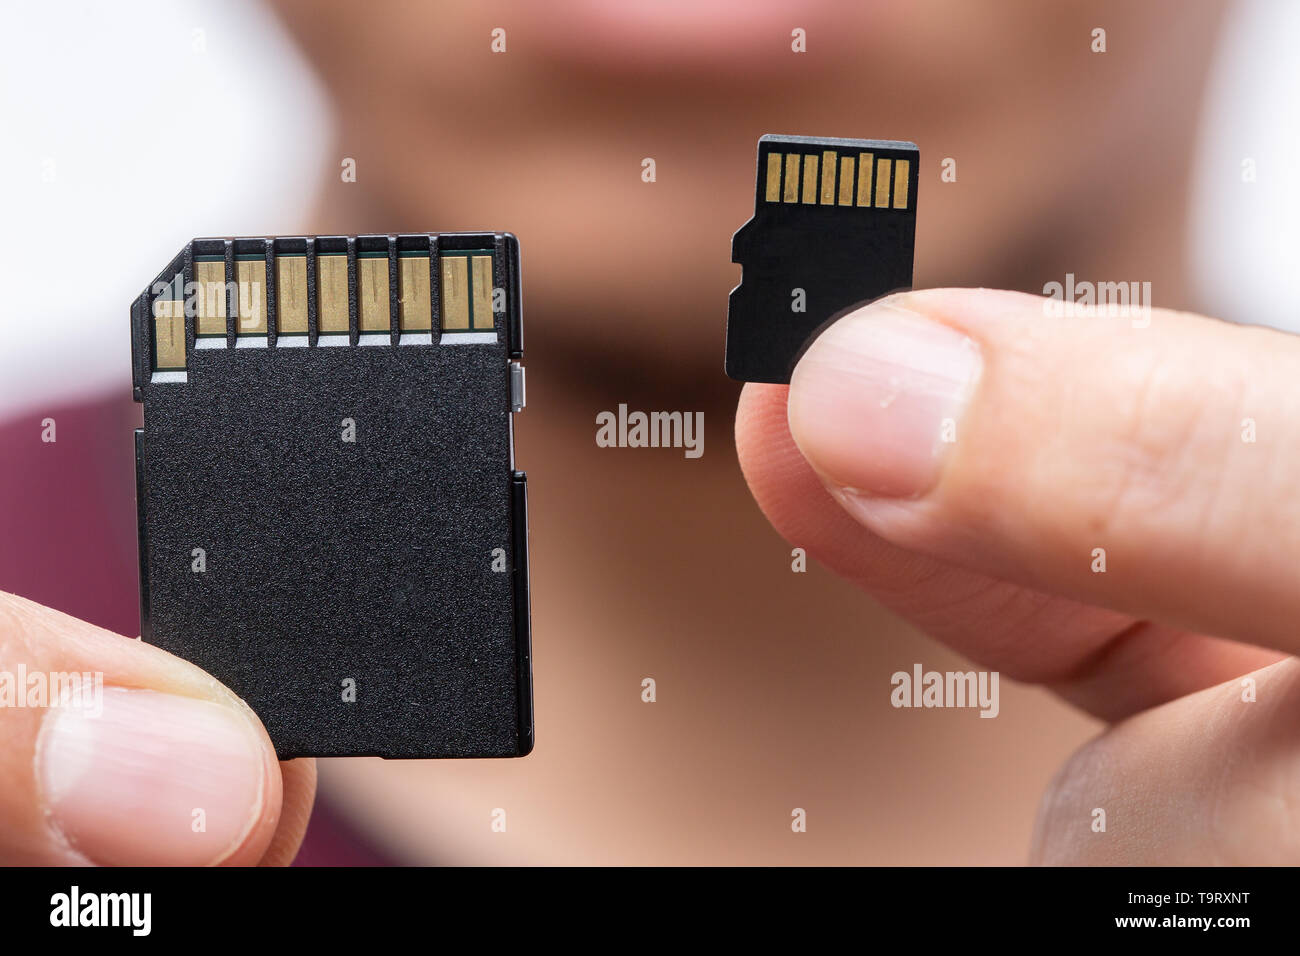 Micro sd card immagini e fotografie stock ad alta risoluzione - Alamy